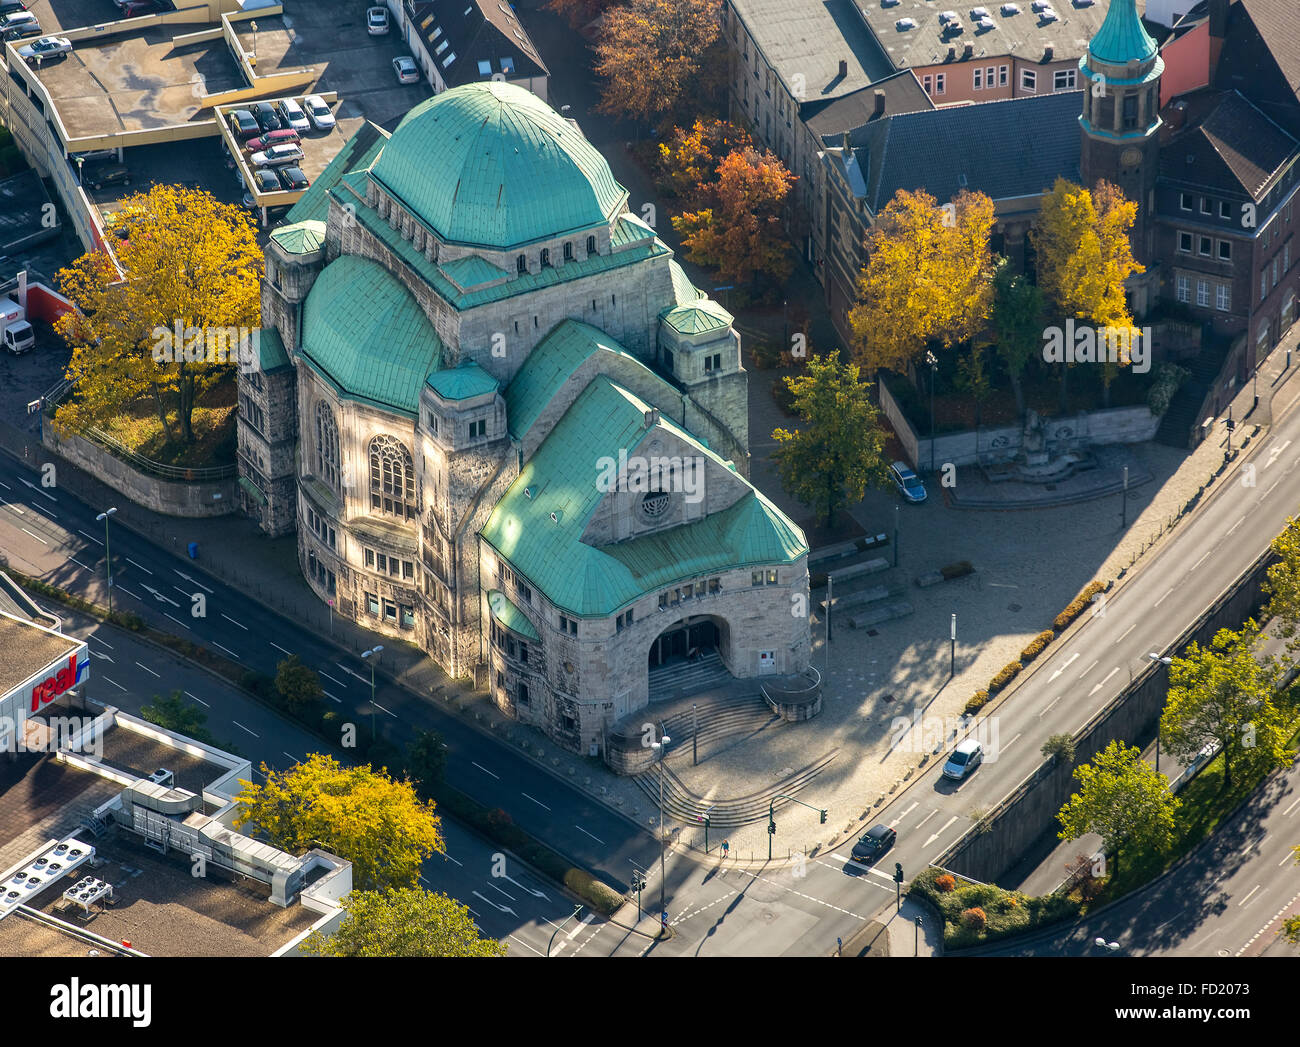 Alte Synagoge, Haus der jüdischen Kultur, Kulturinstitut, Essen, Ruhrgebiet, Nordrhein-Westfalen, Deutschland Stockfoto